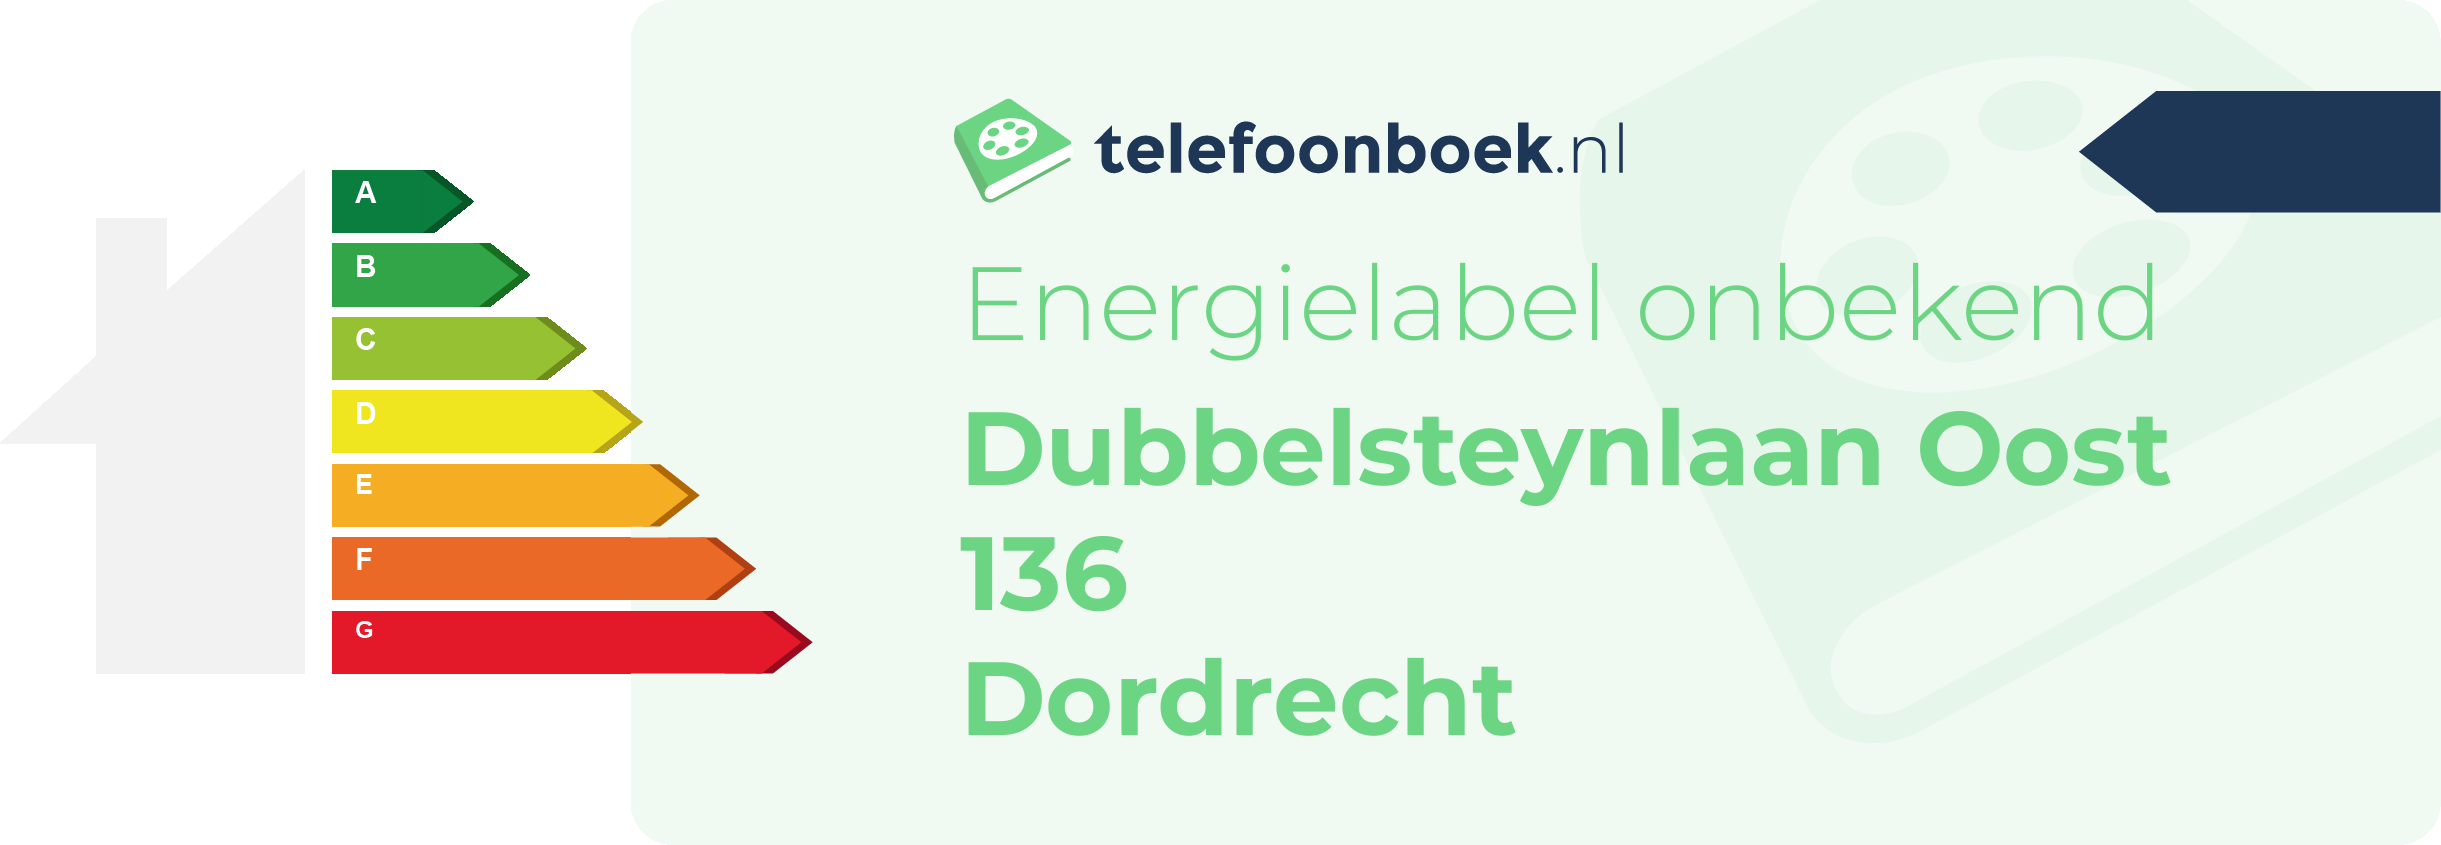 Energielabel Dubbelsteynlaan Oost 136 Dordrecht